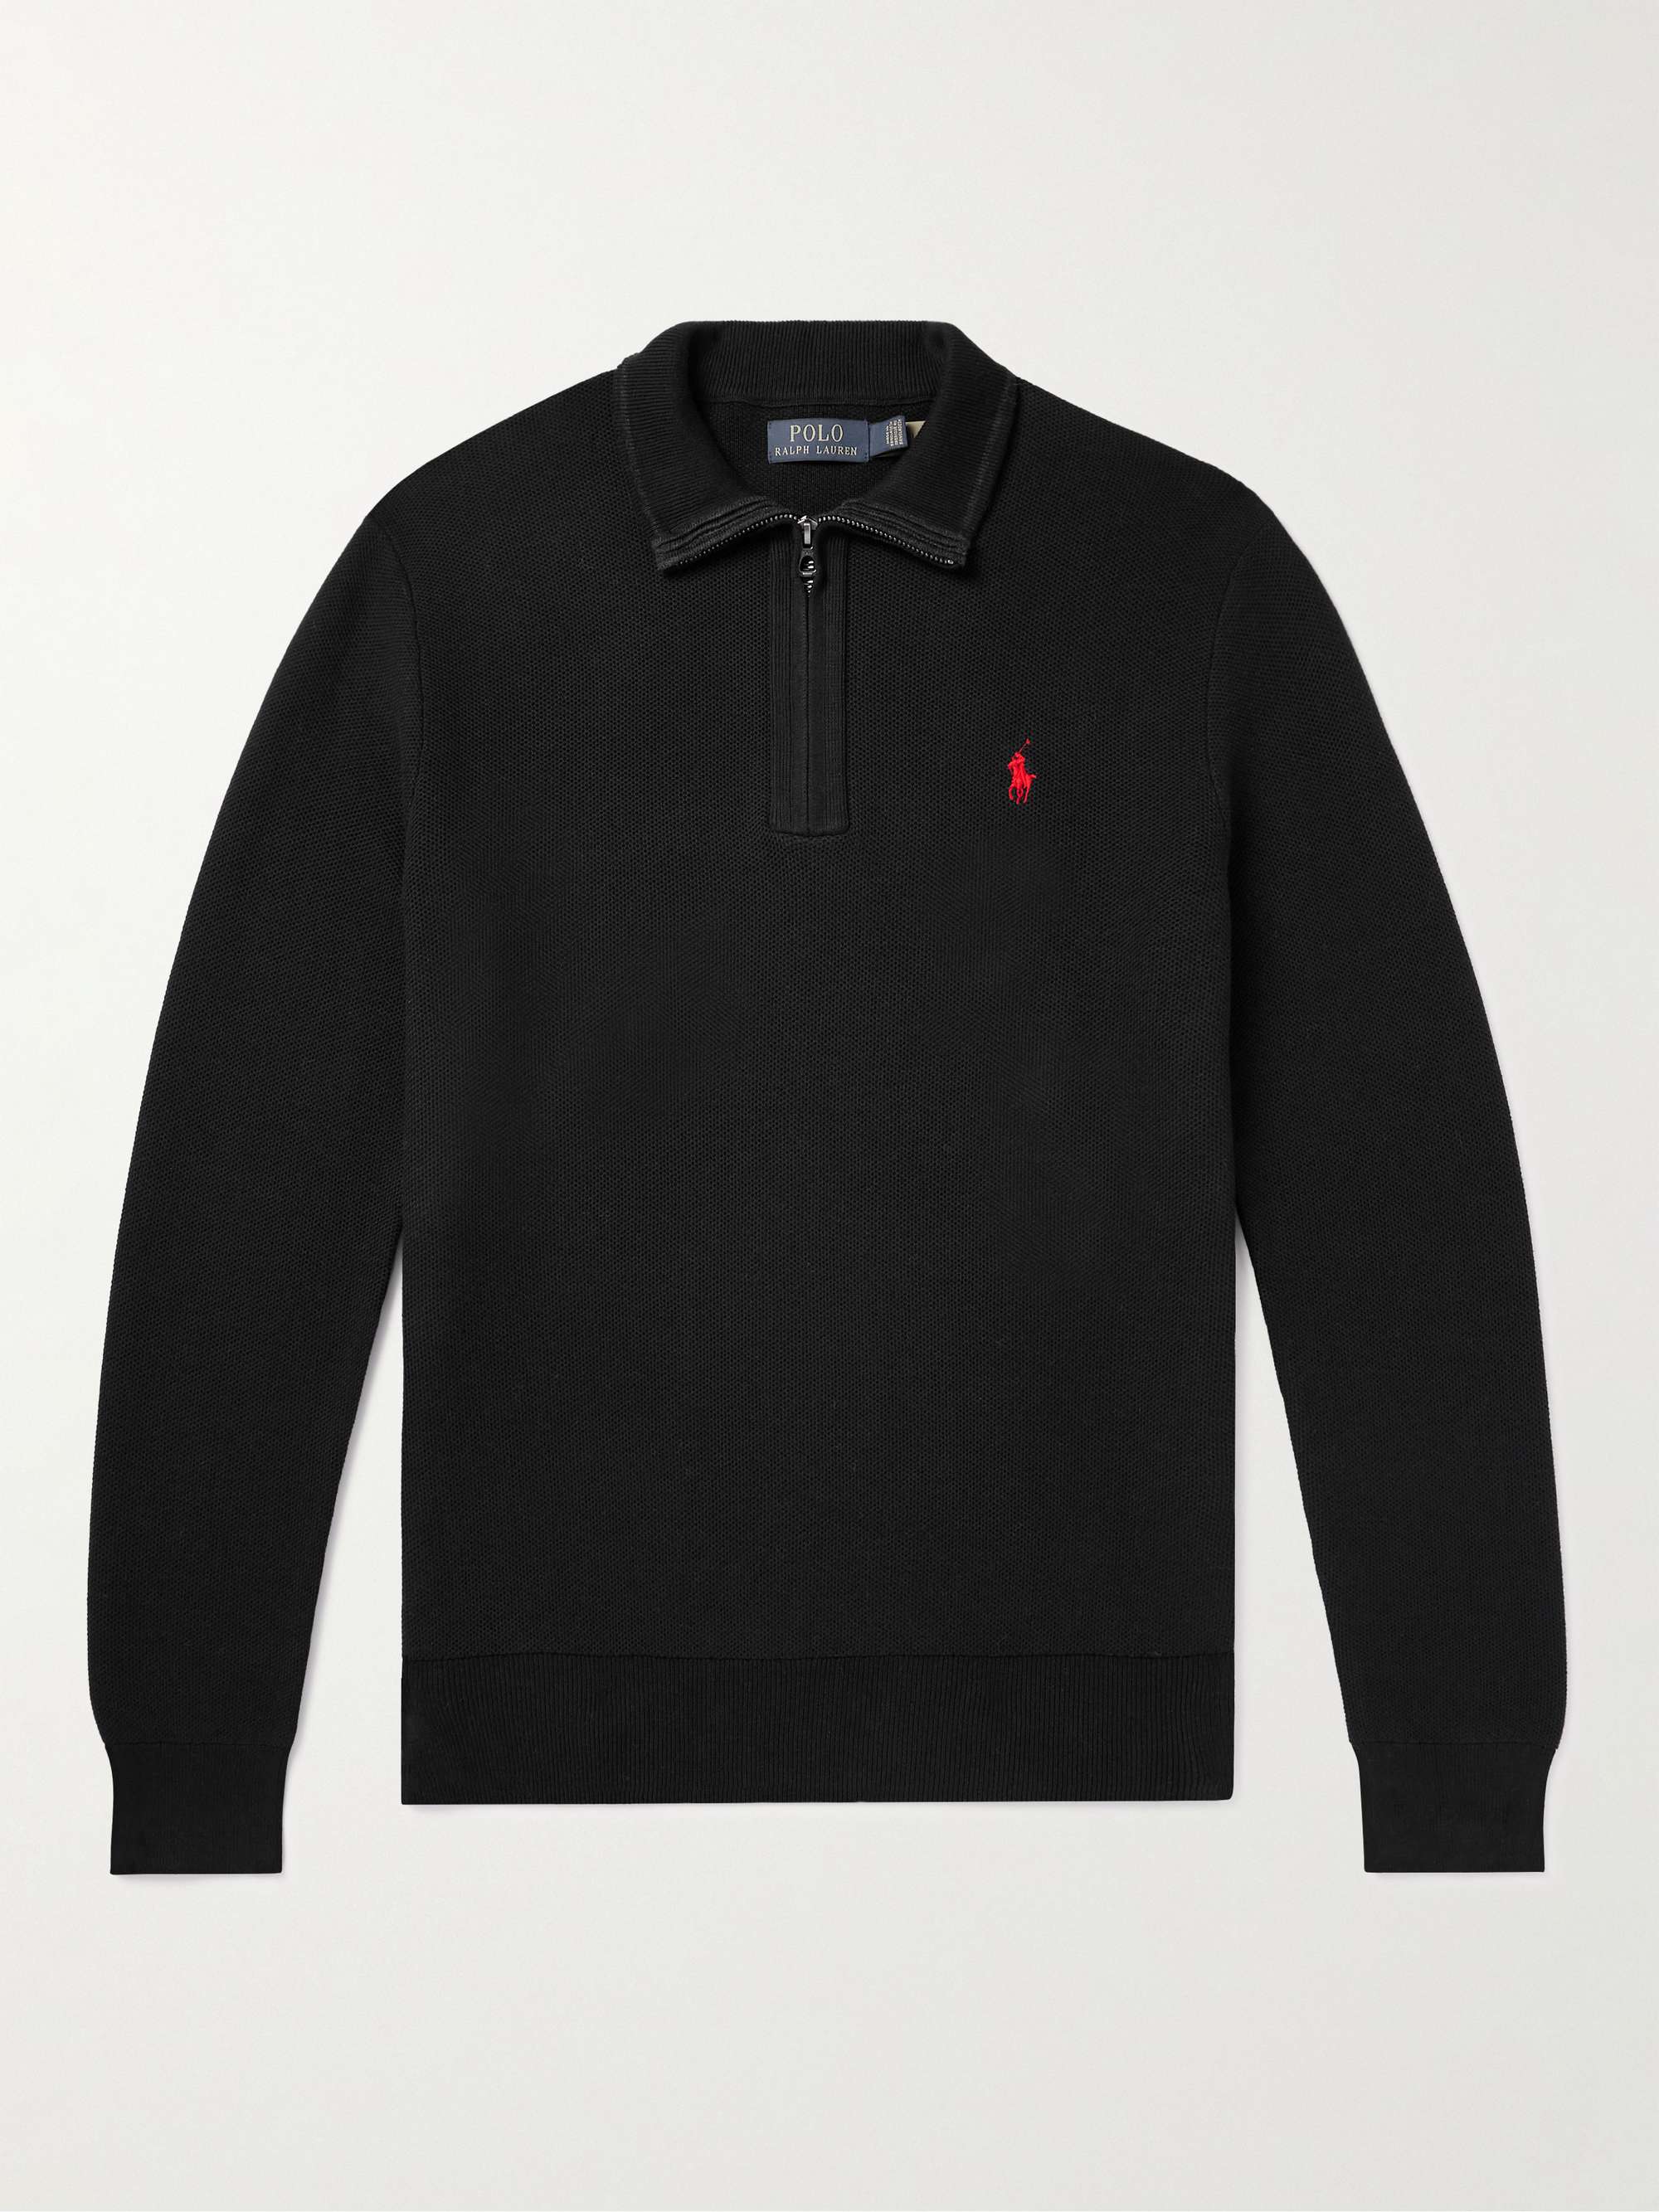 POLO RALPH LAUREN Cotton Half-Zip Sweater for Men | MR PORTER